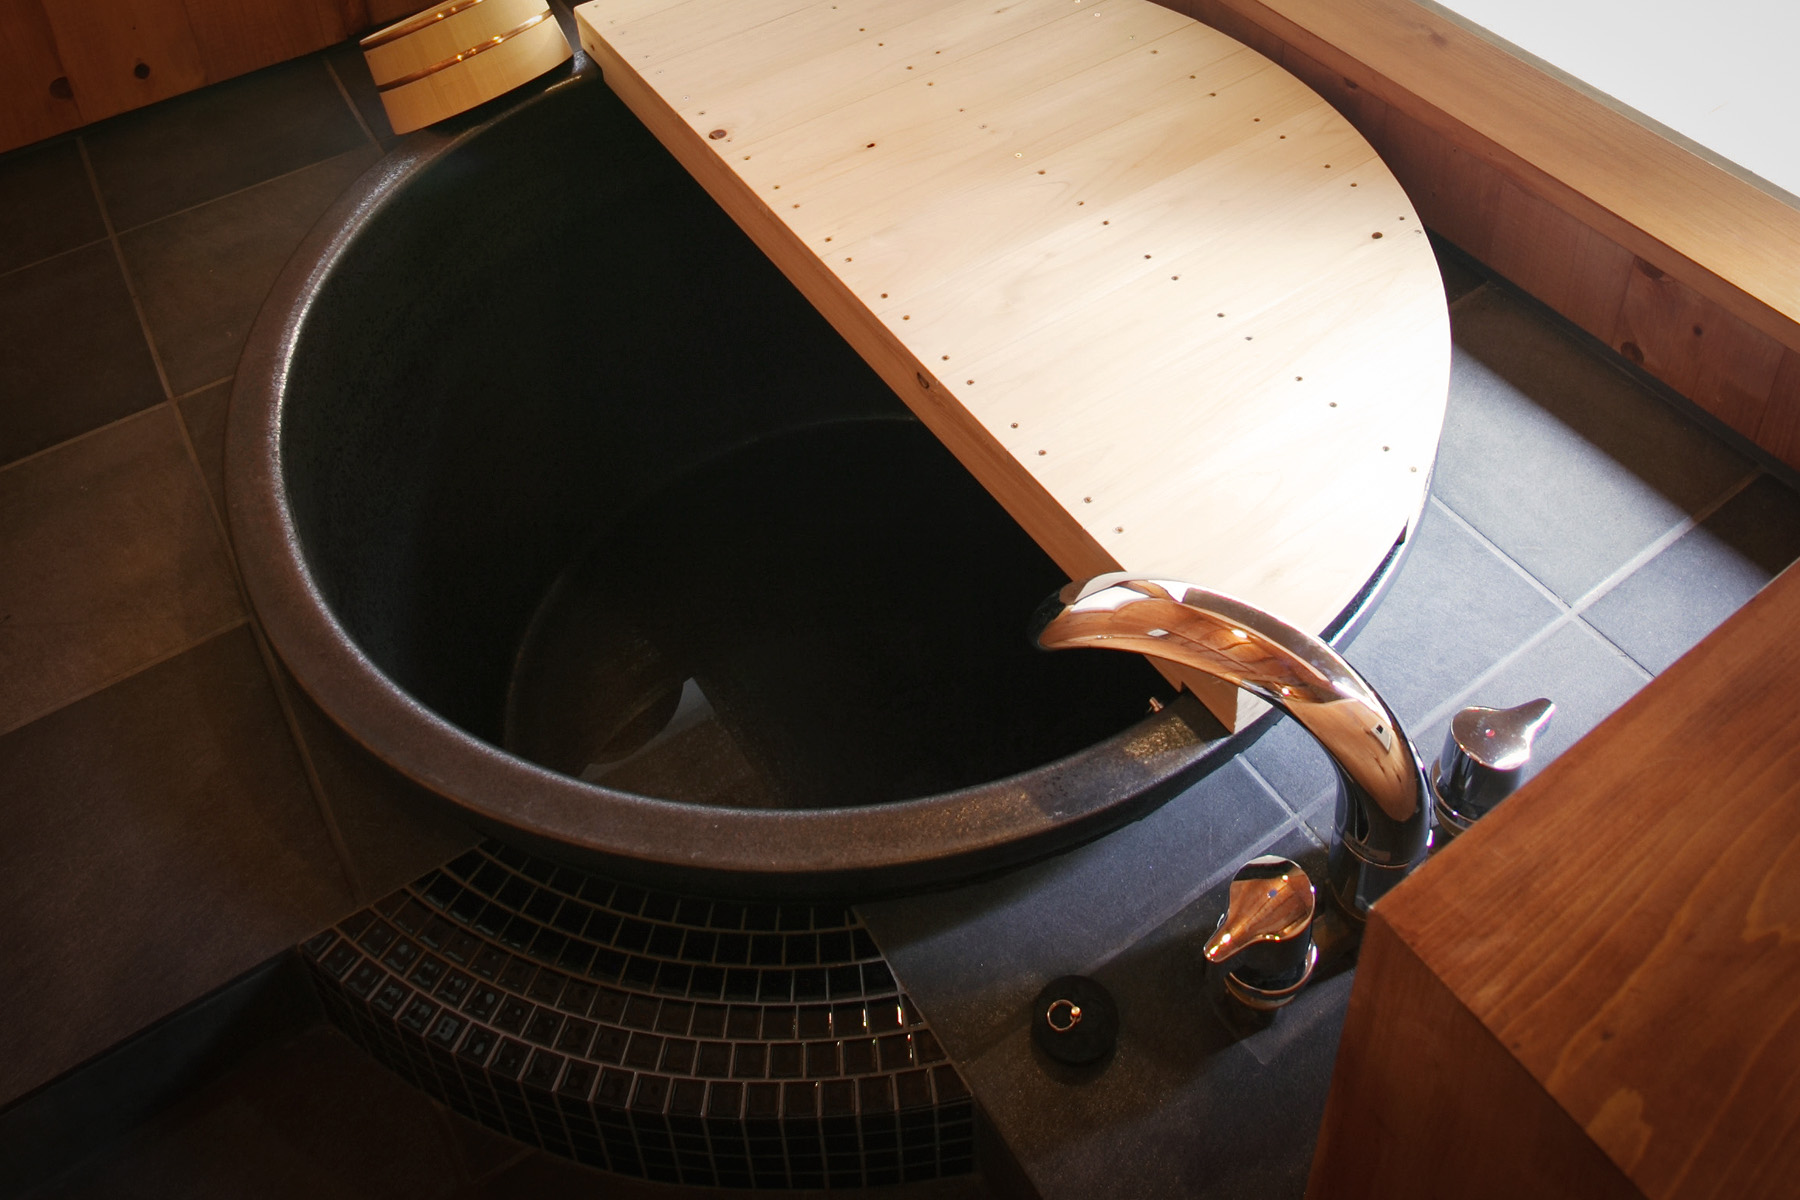 京都デザイン浴槽 庭が望め、半露天風呂の雰囲気を楽しむことができます。